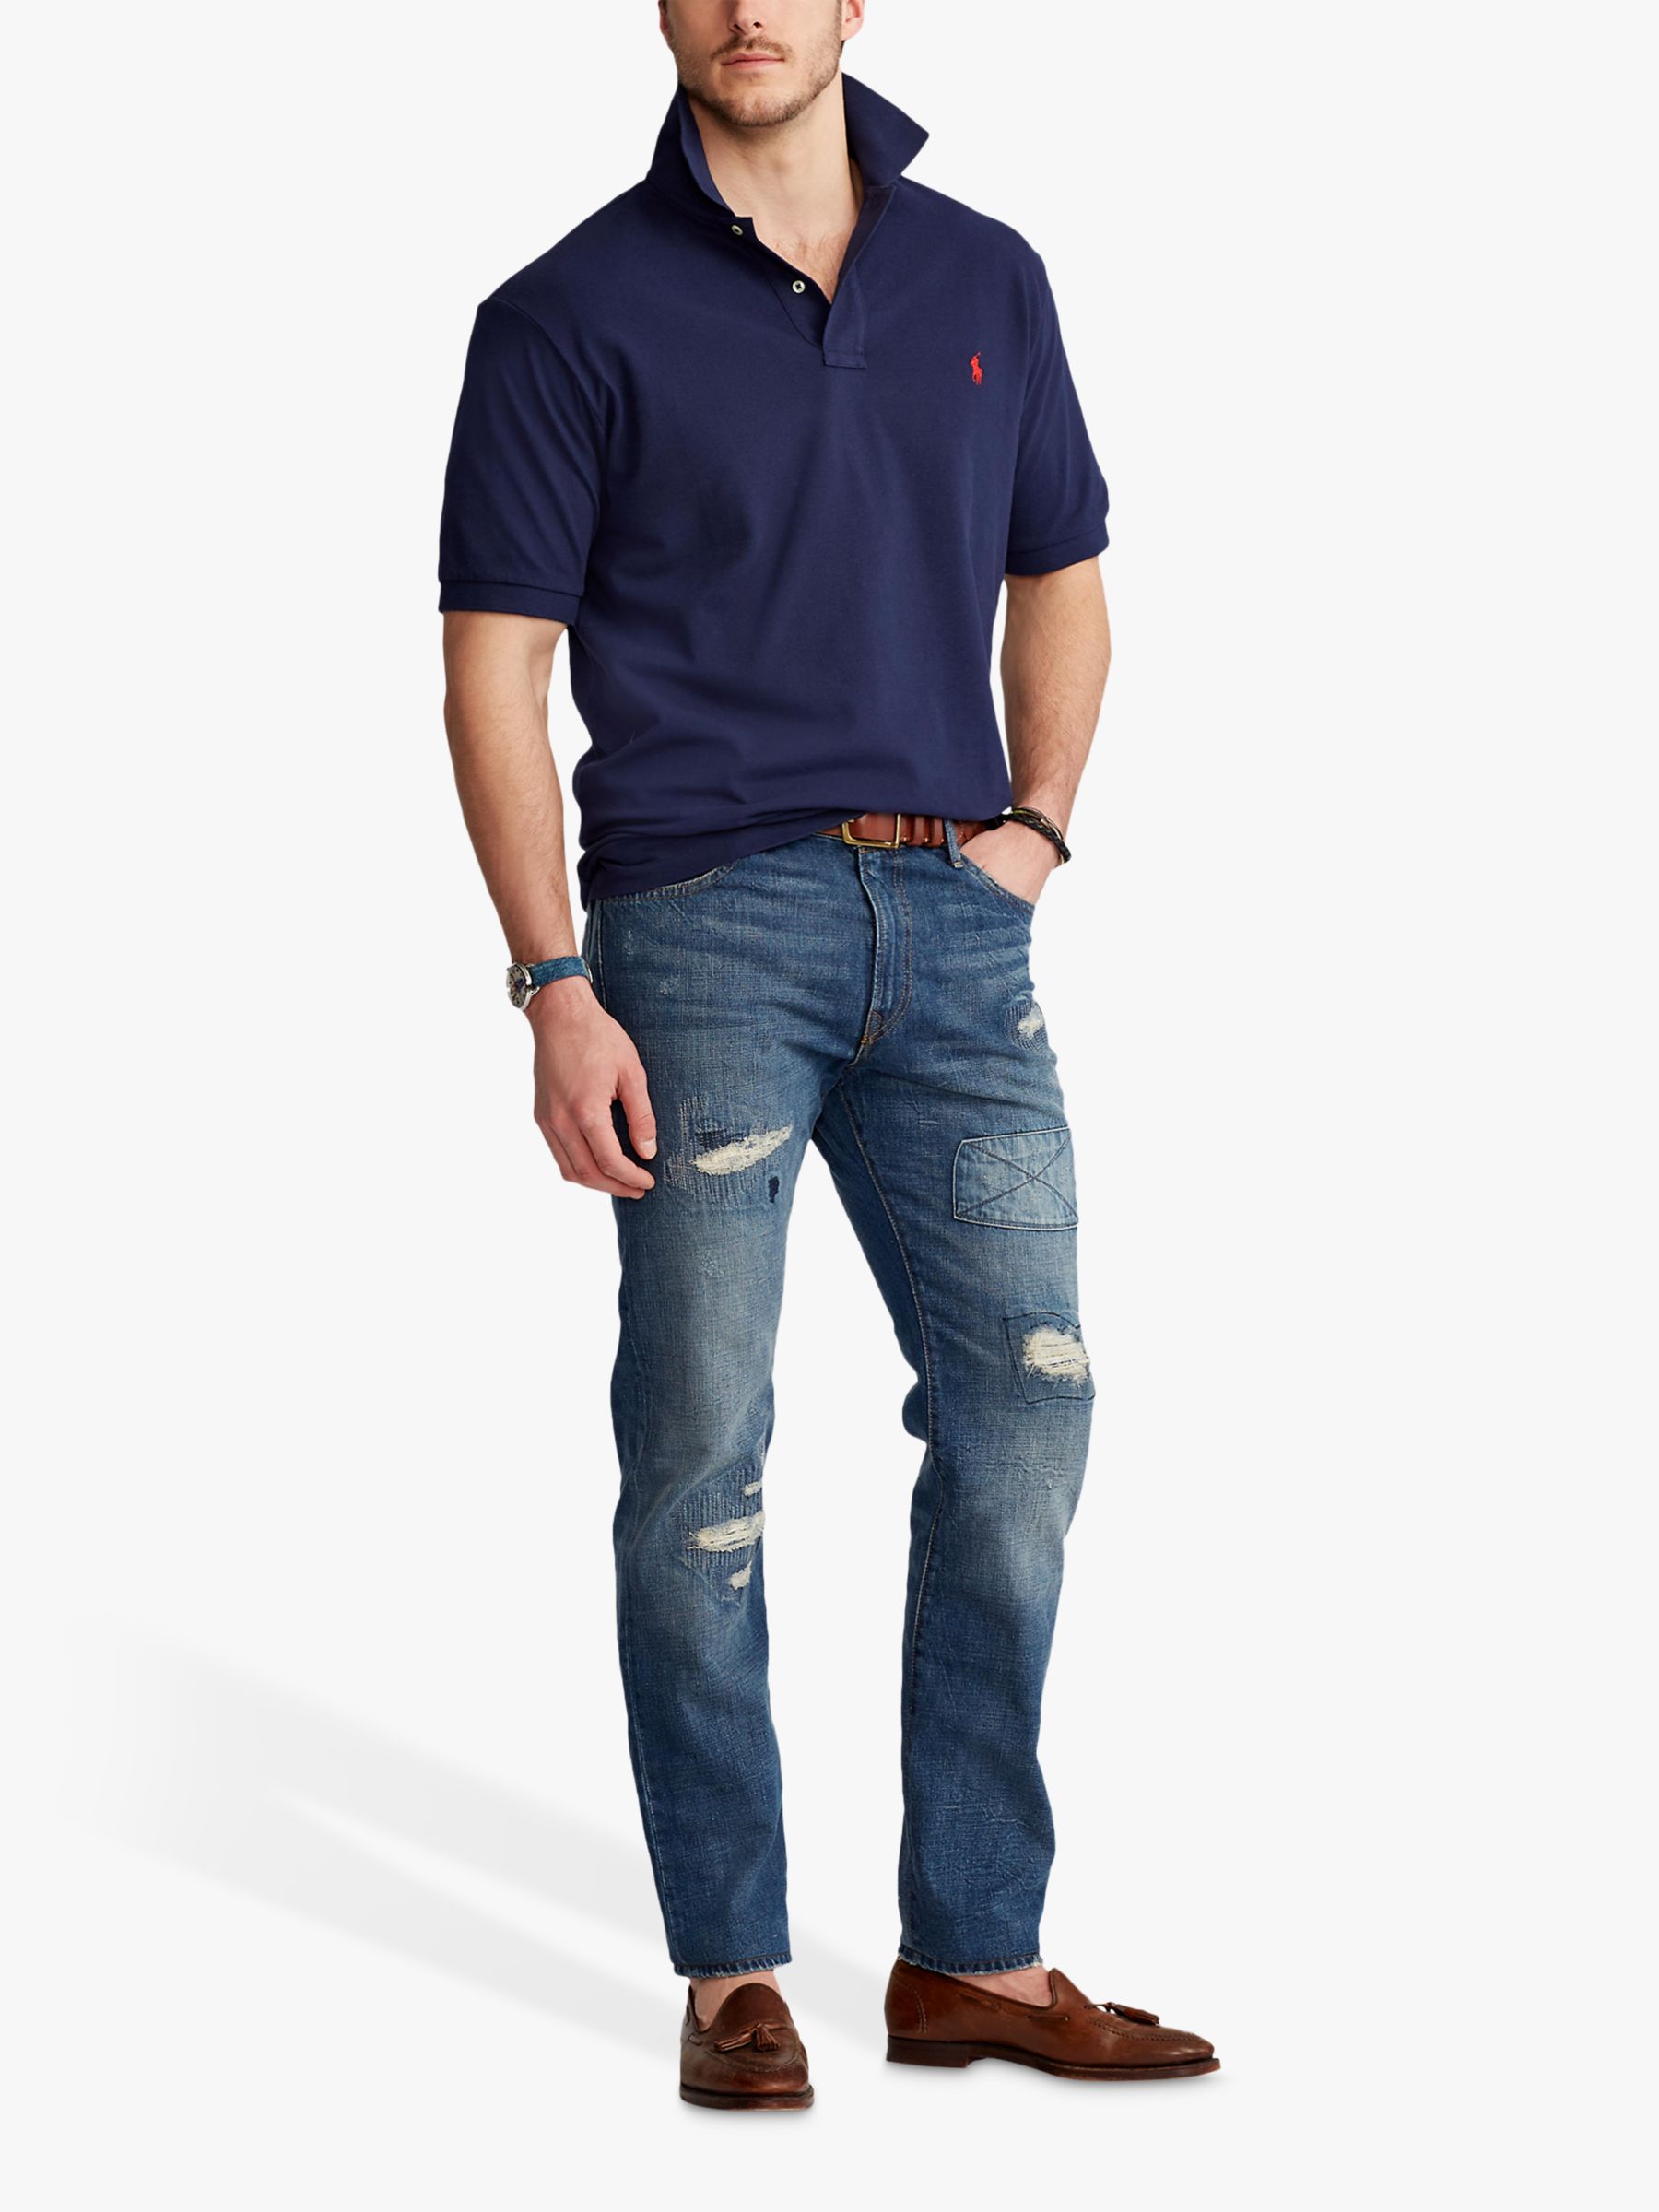 Polo Ralph Lauren Big & Tall Regular Fit Polo Shirt, Newport Navy, 1XB